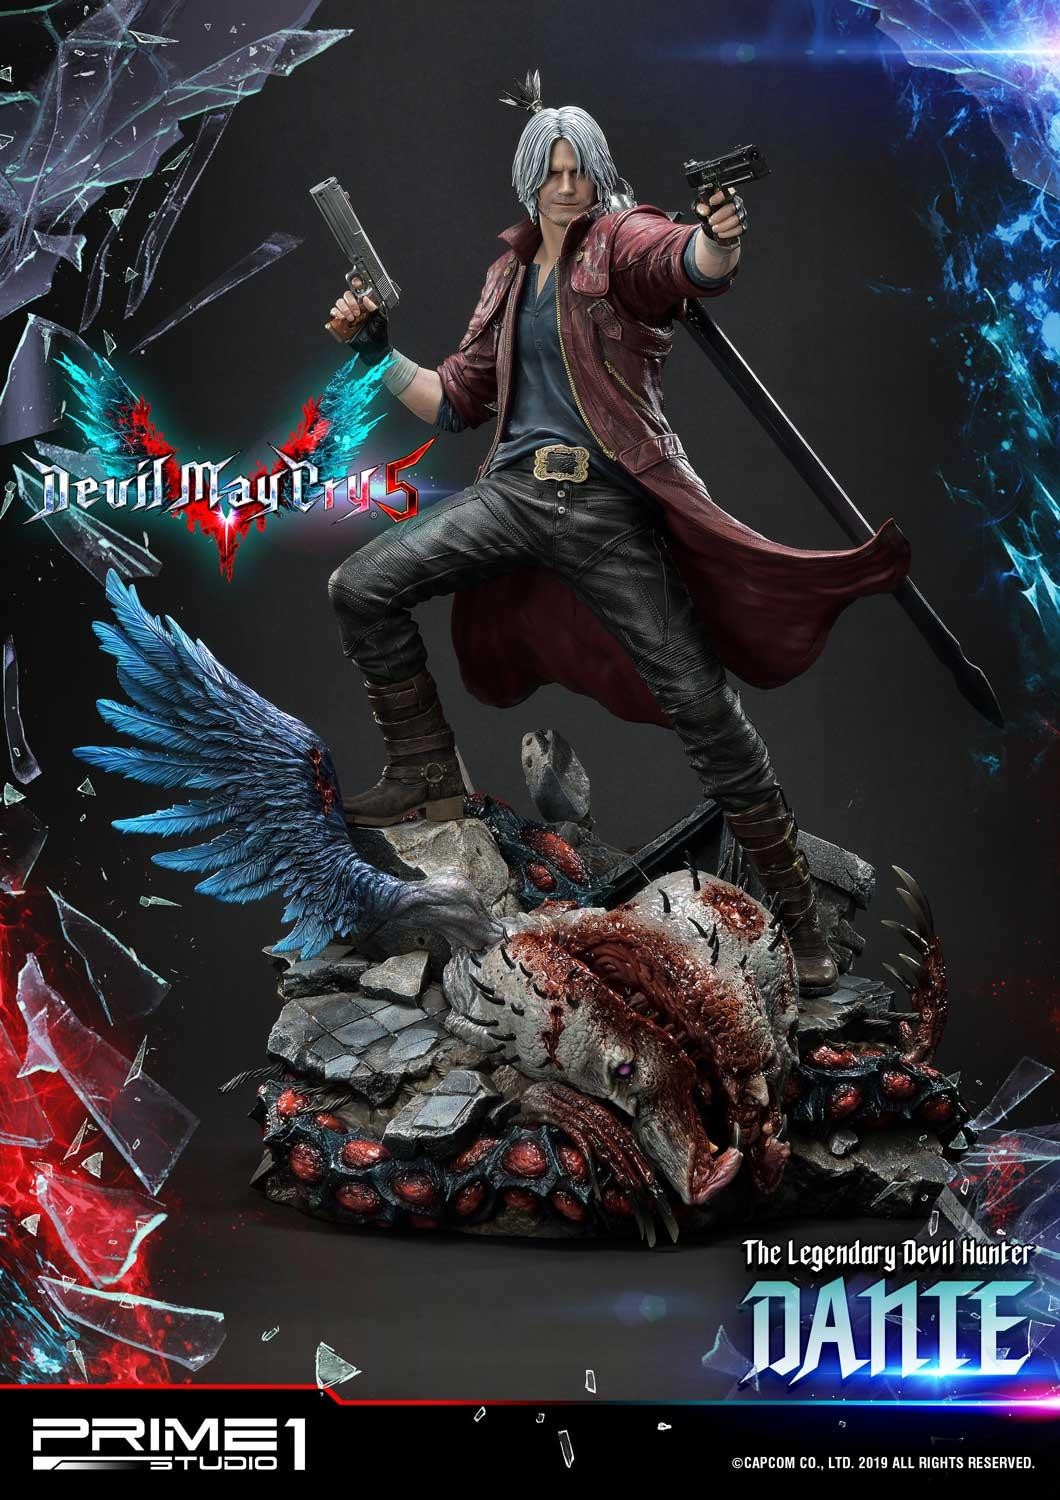 Premium Devil May Cry 3 Dante figure announced by Prime 1 Studio